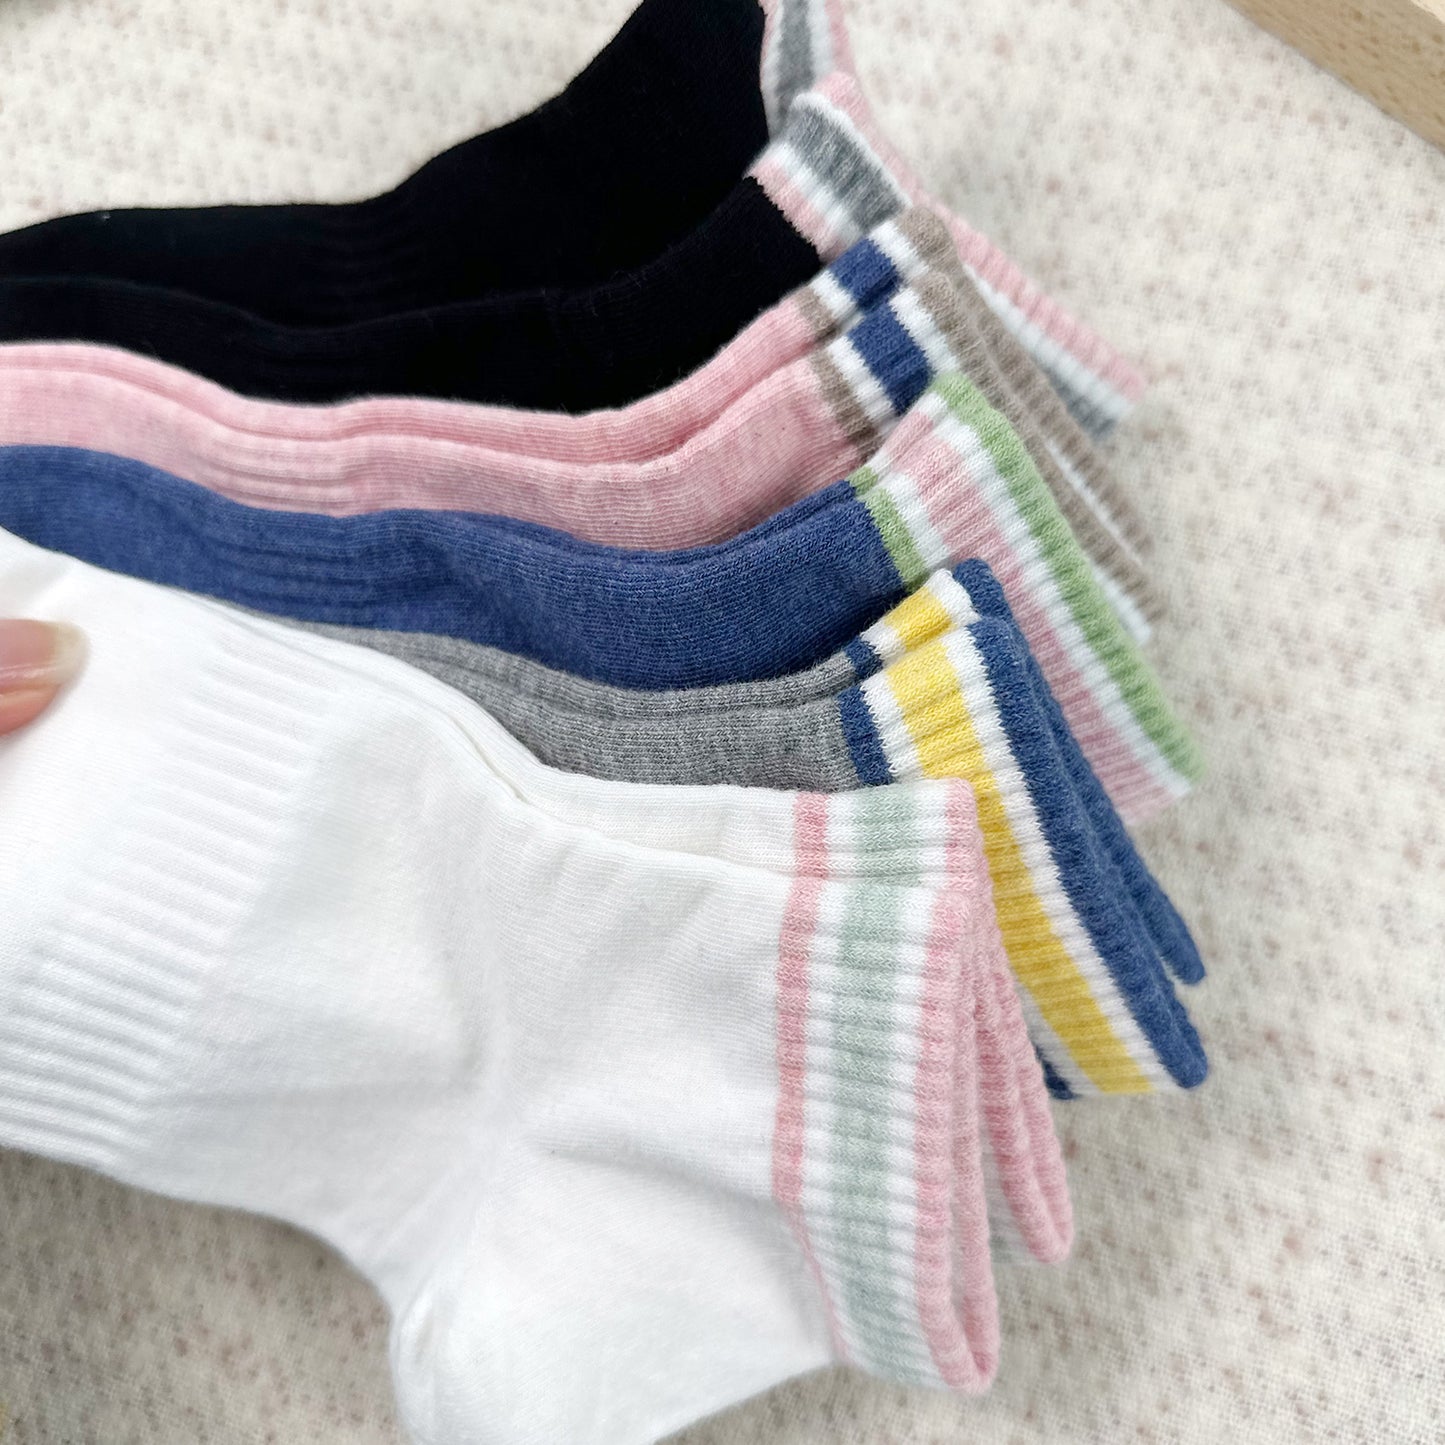 Women's Ankle Cream Board Socks